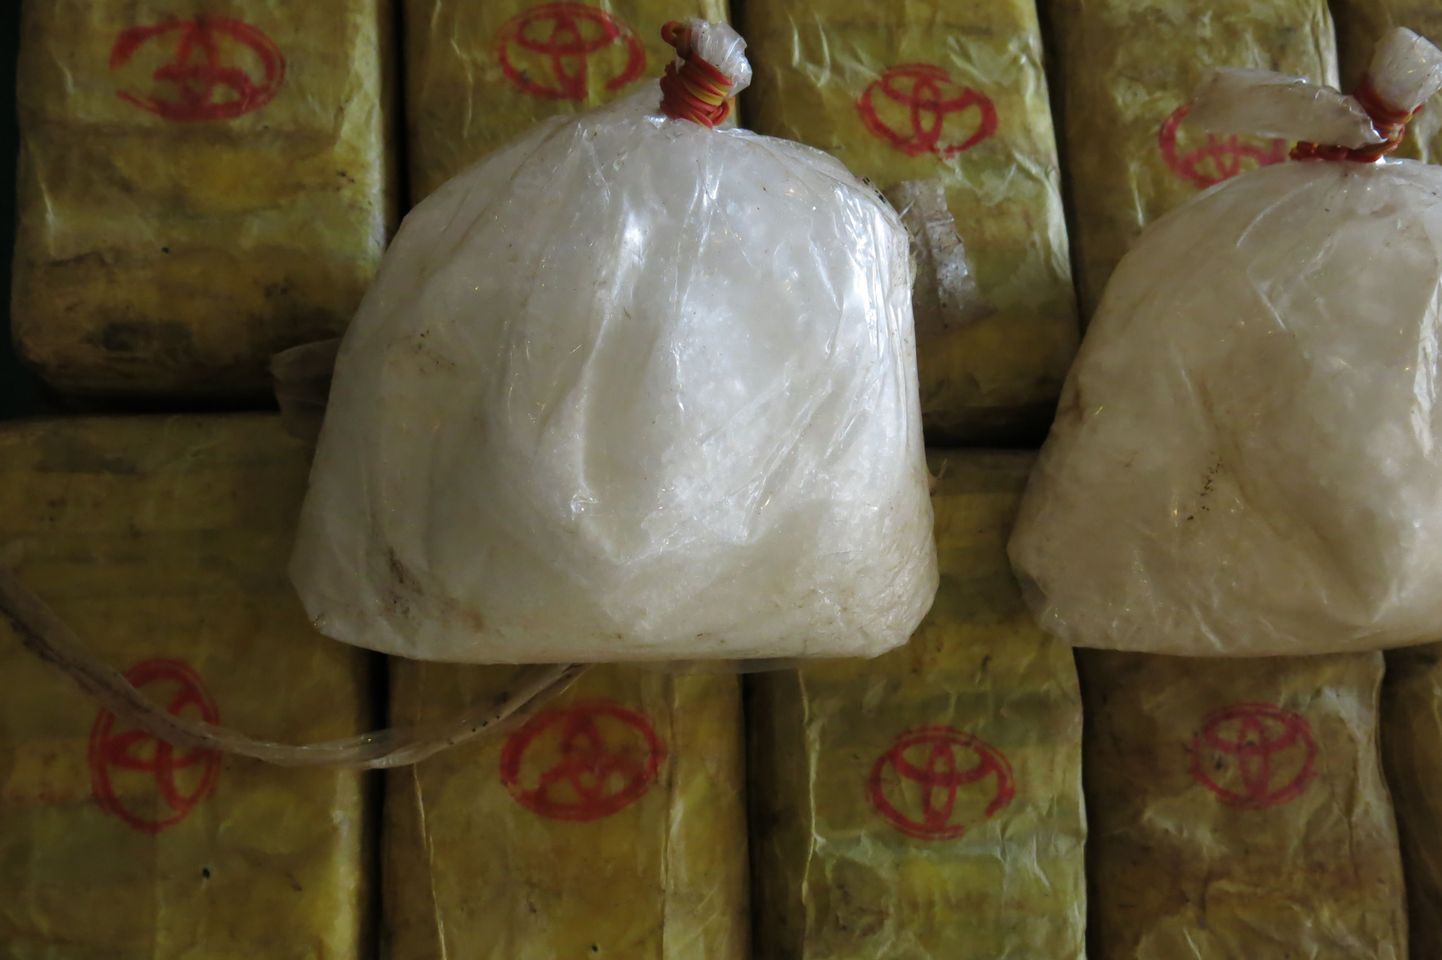 Tai politsei näitas avalikkusele narkootikumide pakke, mis on pärit Birmast.